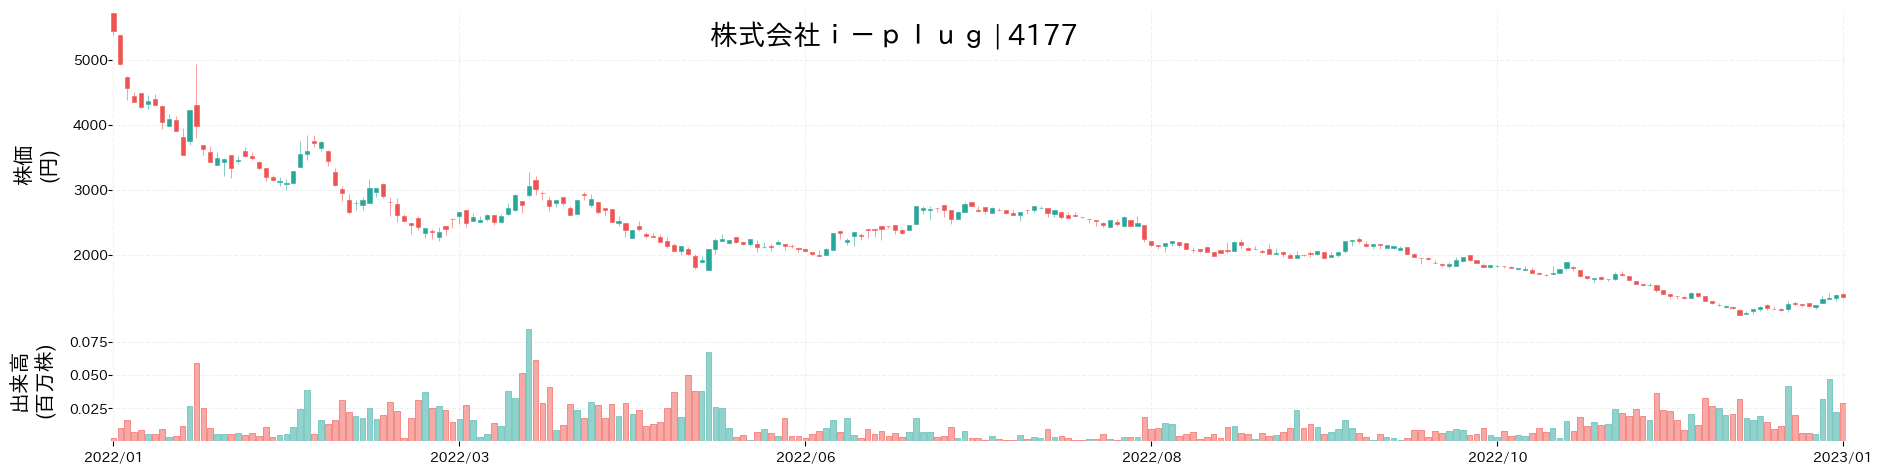 i-plugの株価推移(2022)